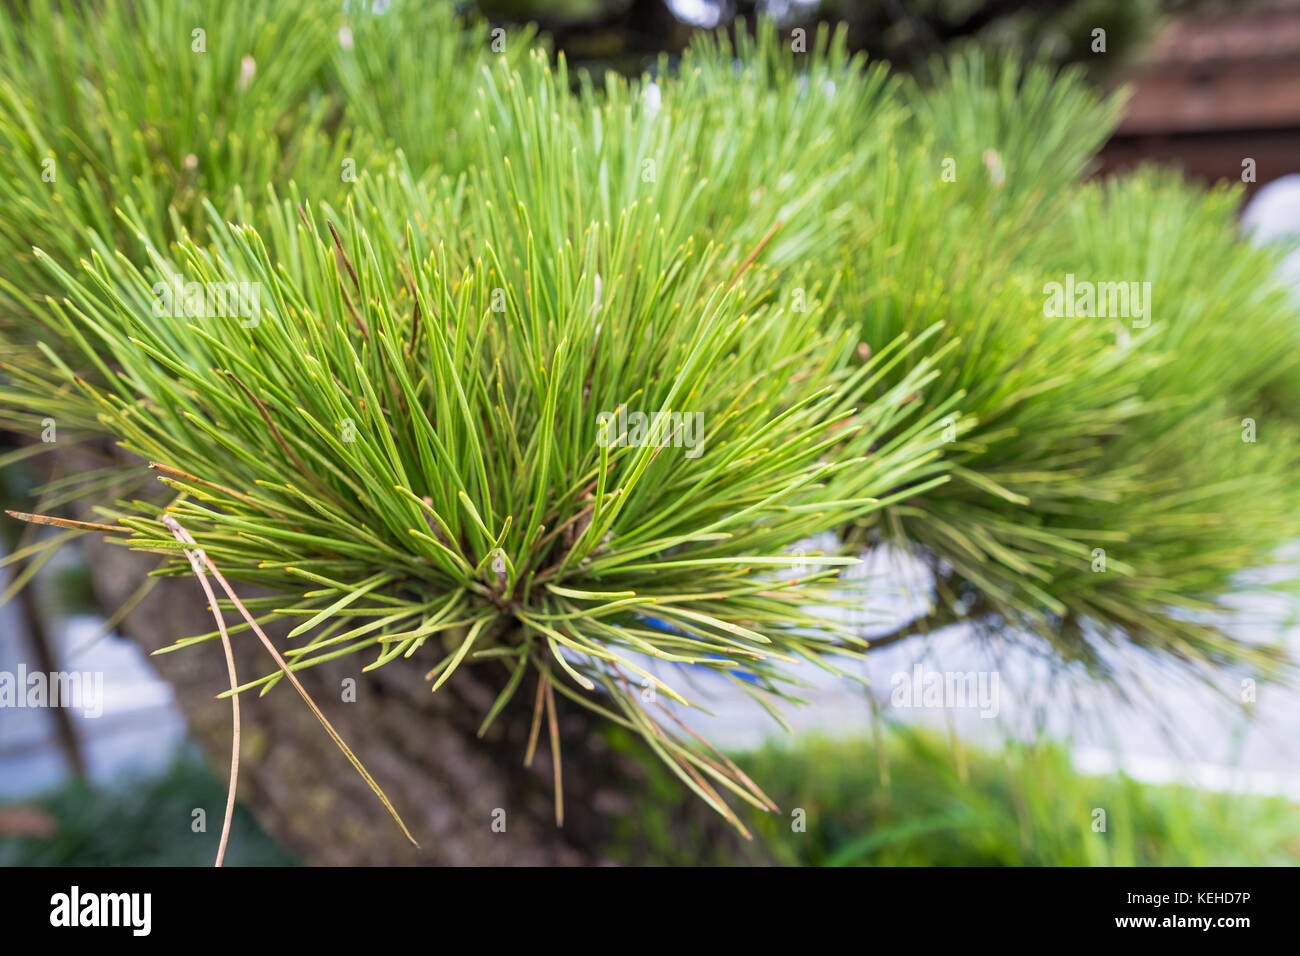 Pinus kesiya, Khasi pine, Benguet pine or three-needled pine Stock Photo